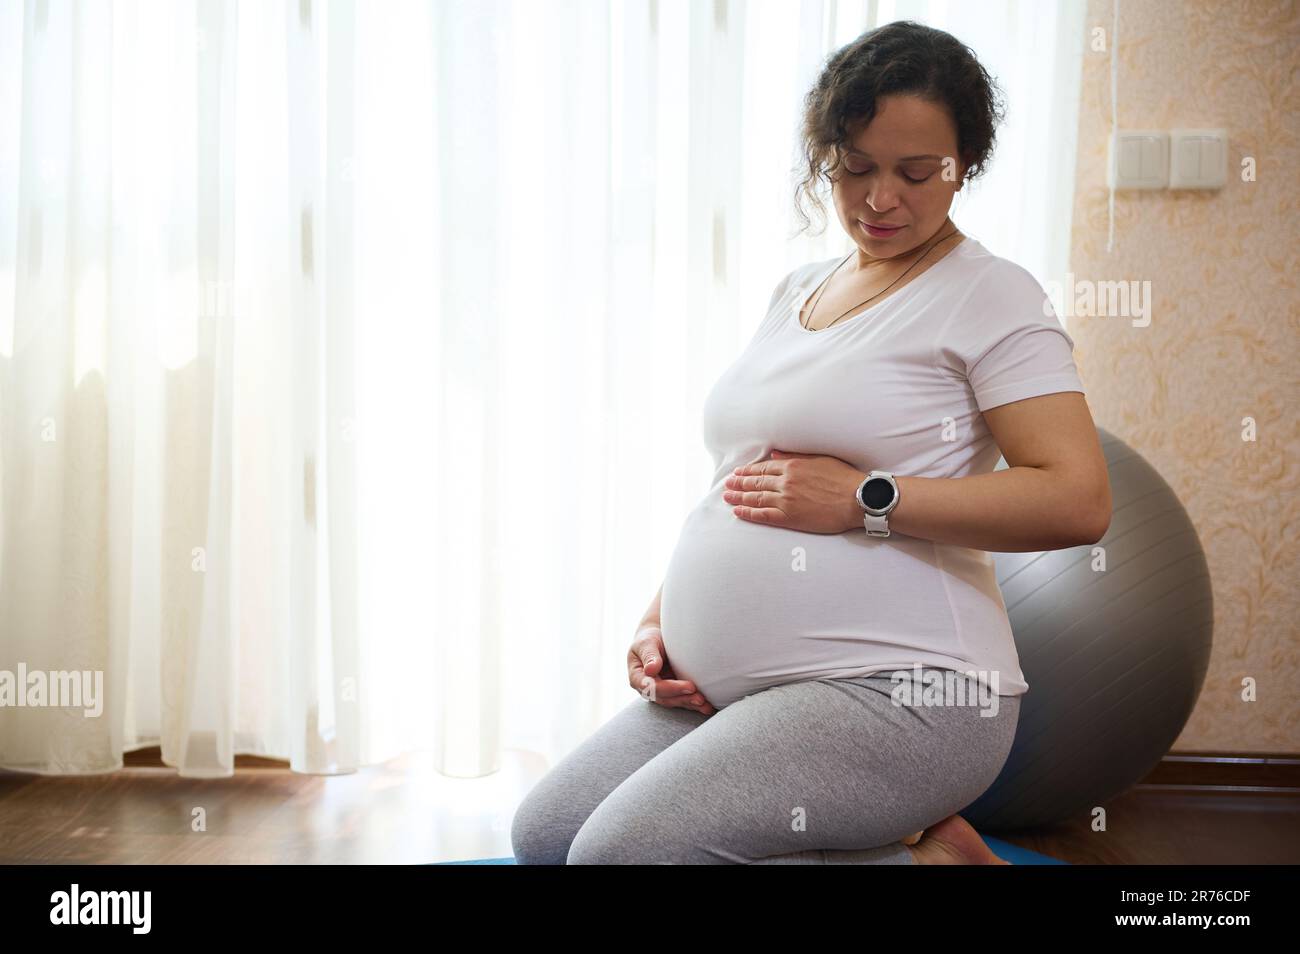 Mère confiante, femme gravid touchant son ventre enceinte ...